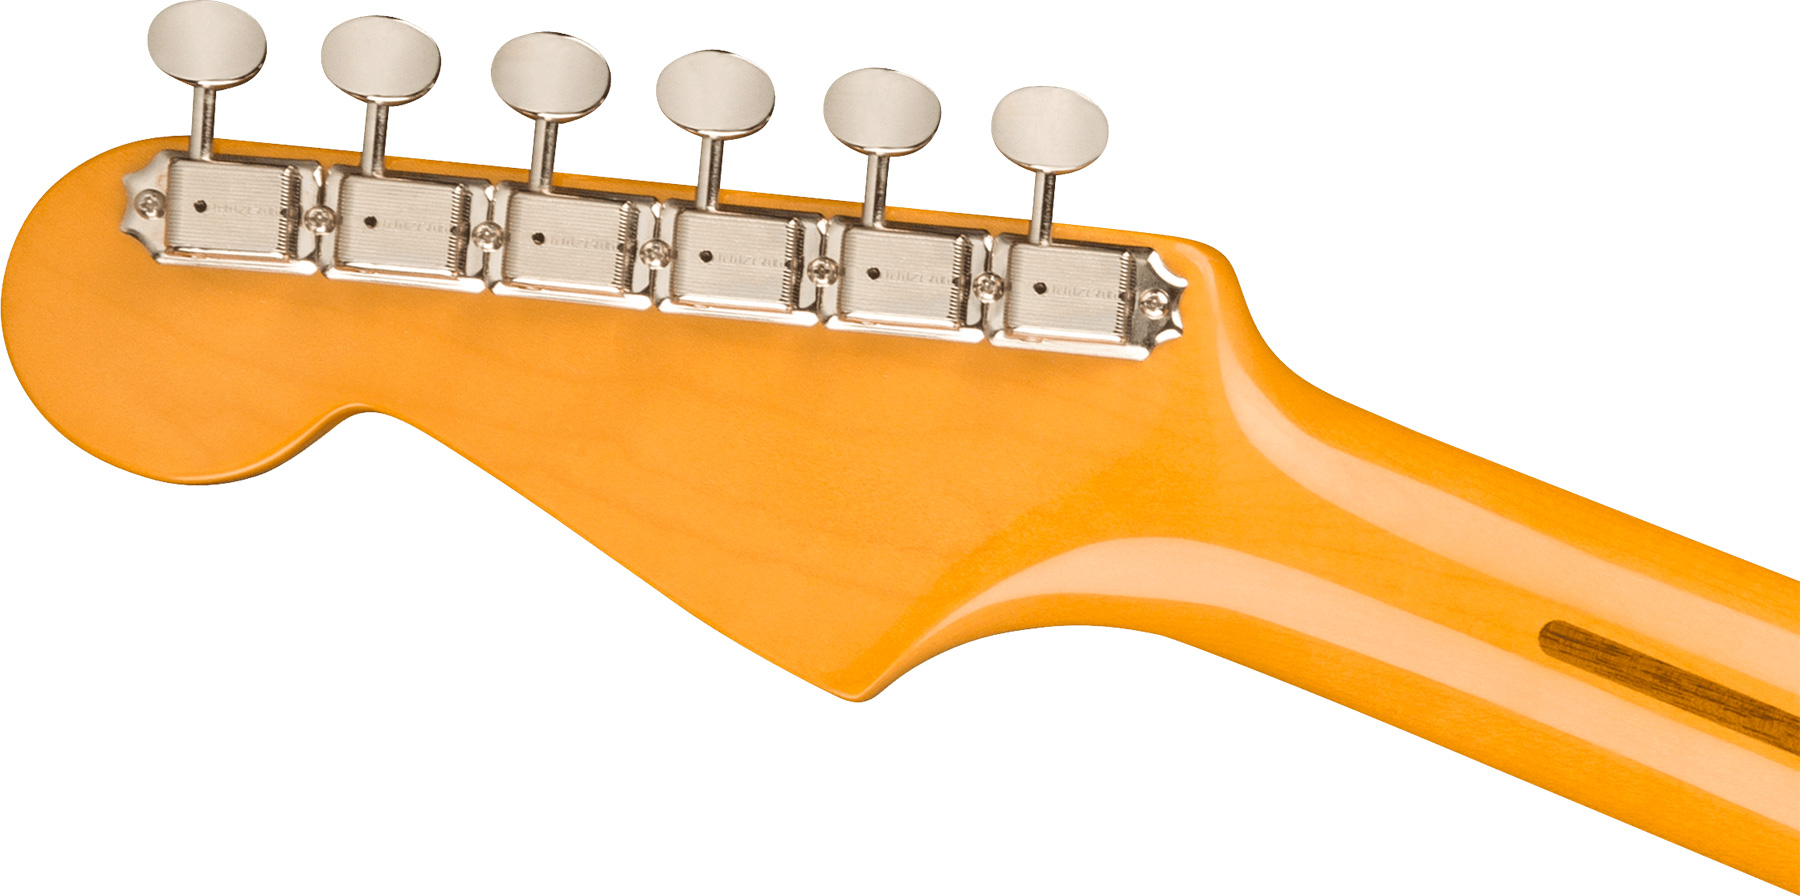 Fender Strat 1957 American Vintage Ii Usa 3s Trem Mn - 2-color Sunburst - E-Gitarre in Str-Form - Variation 3